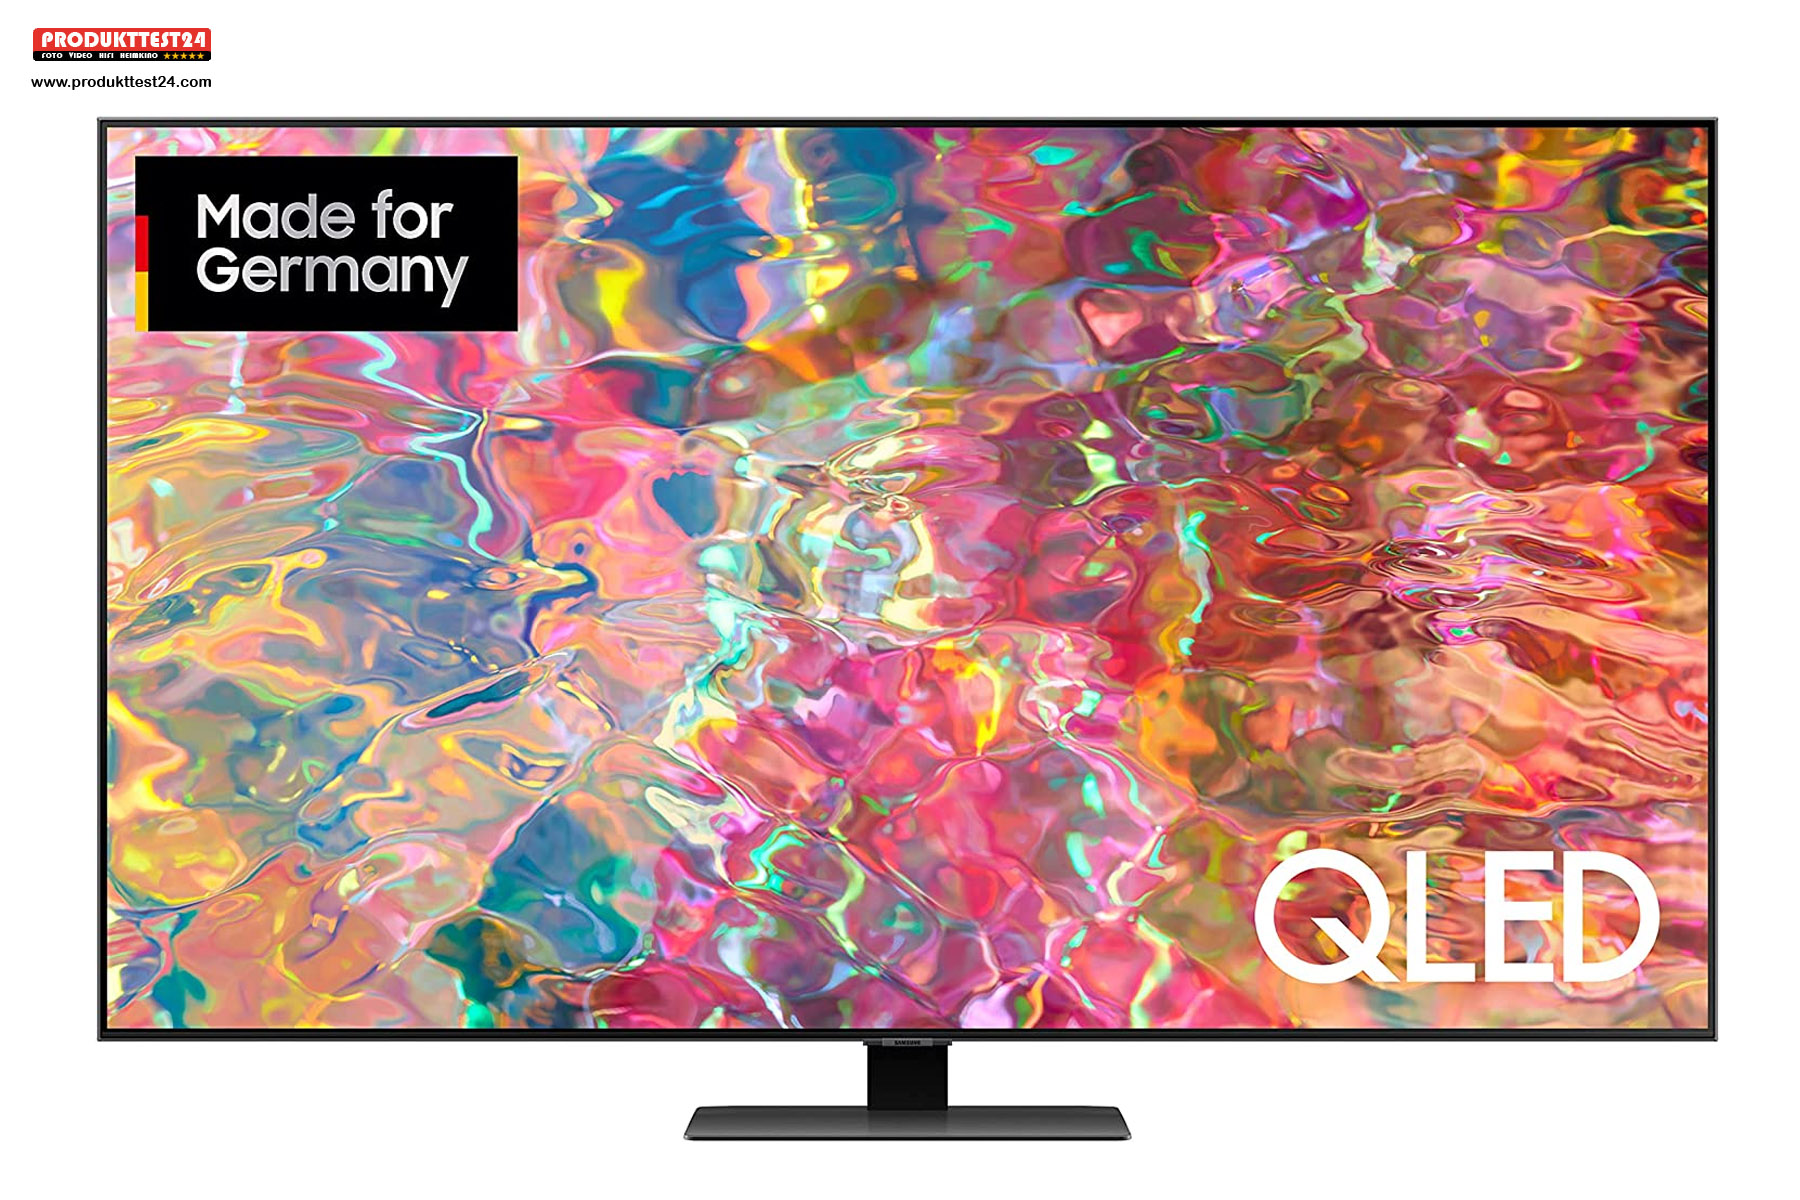 Samsung GQ65Q80B QLED 4K-Fernseher mit 120 Hertz und Full Array Local Dimming.